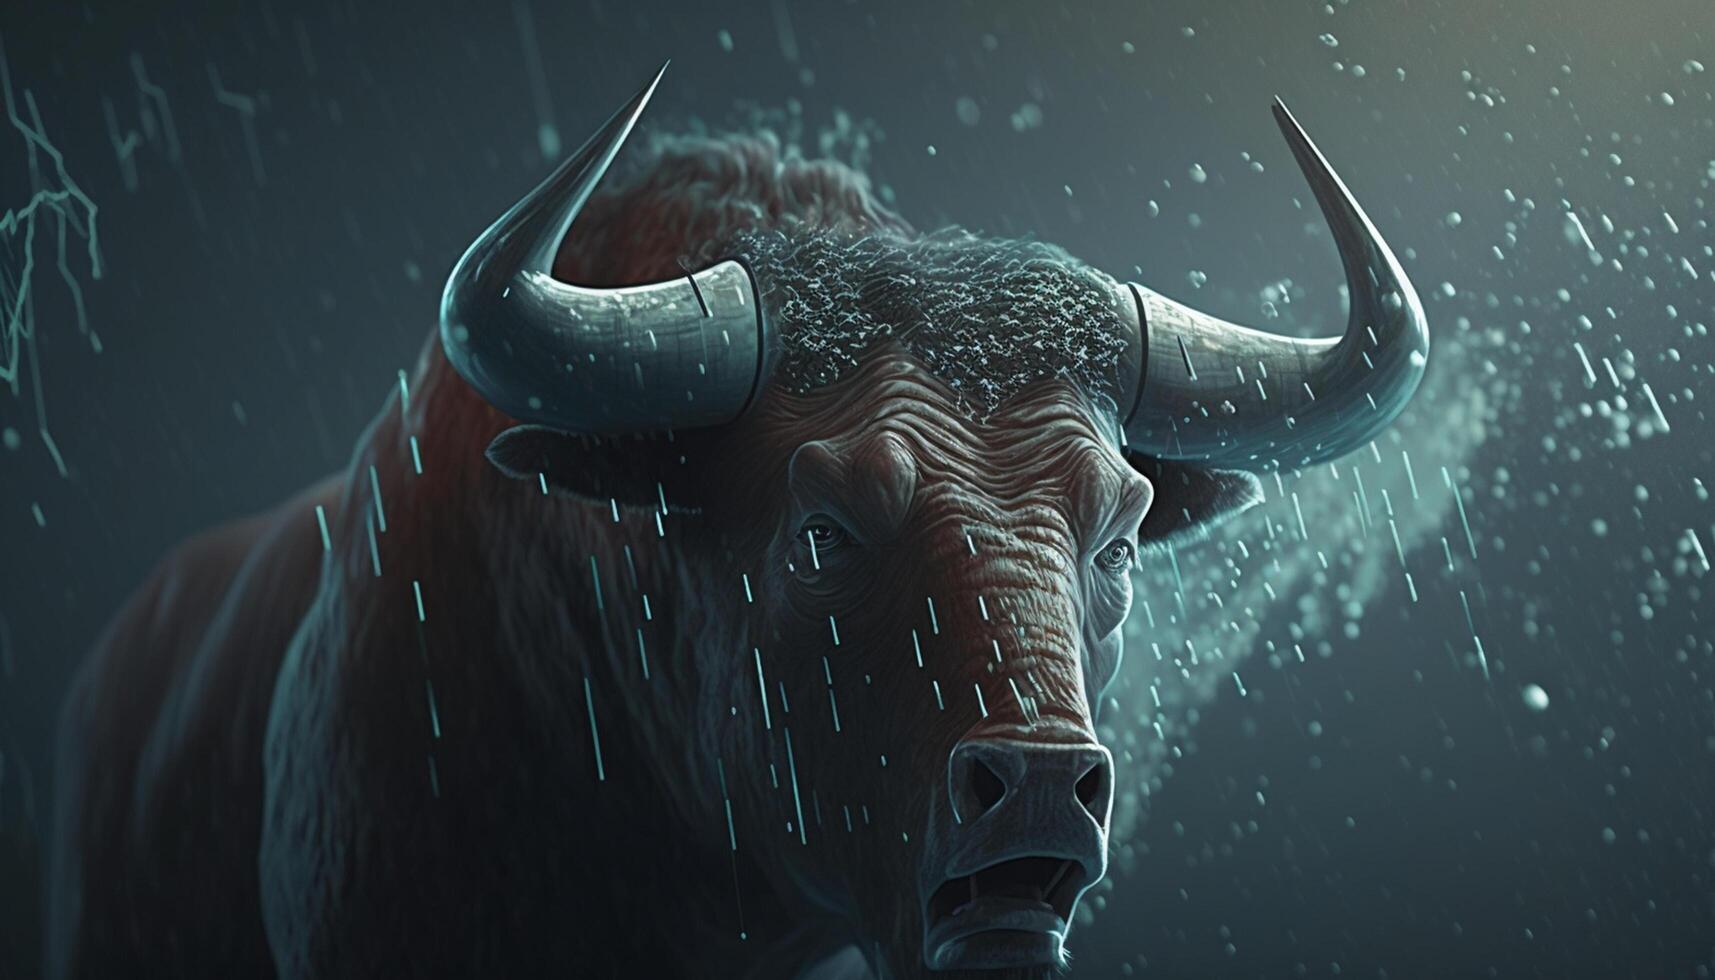 tempestuoso batida uma místico imagem do uma furioso touro durante uma estoque mercado batida ai gerado foto